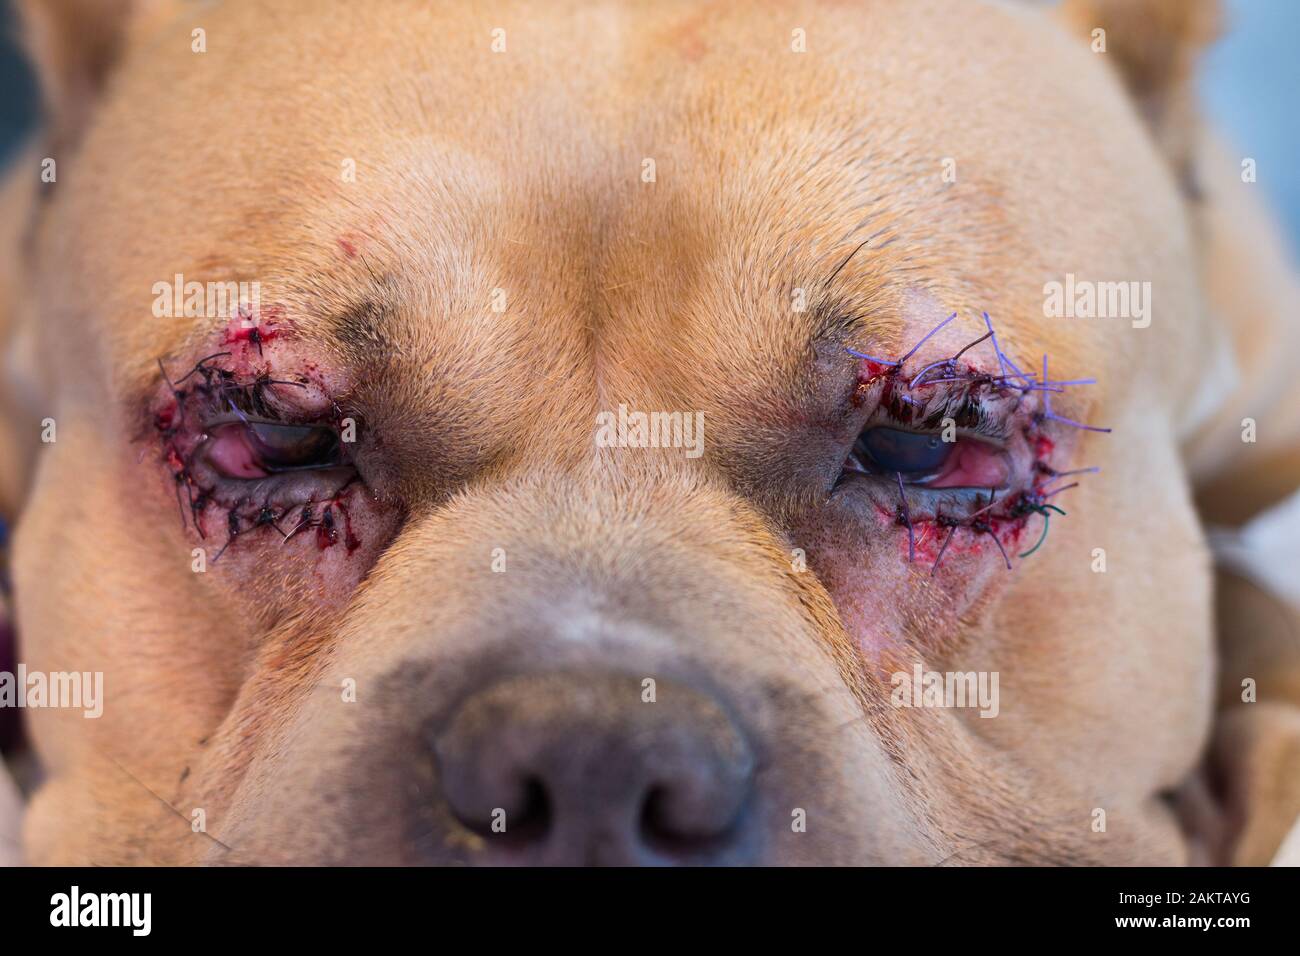 cement Køre ud Midlertidig Amerikanischer Bully-Hund brütet nach der Operation mit Entropion und  Hornhautgeschwür Stockfotografie - Alamy